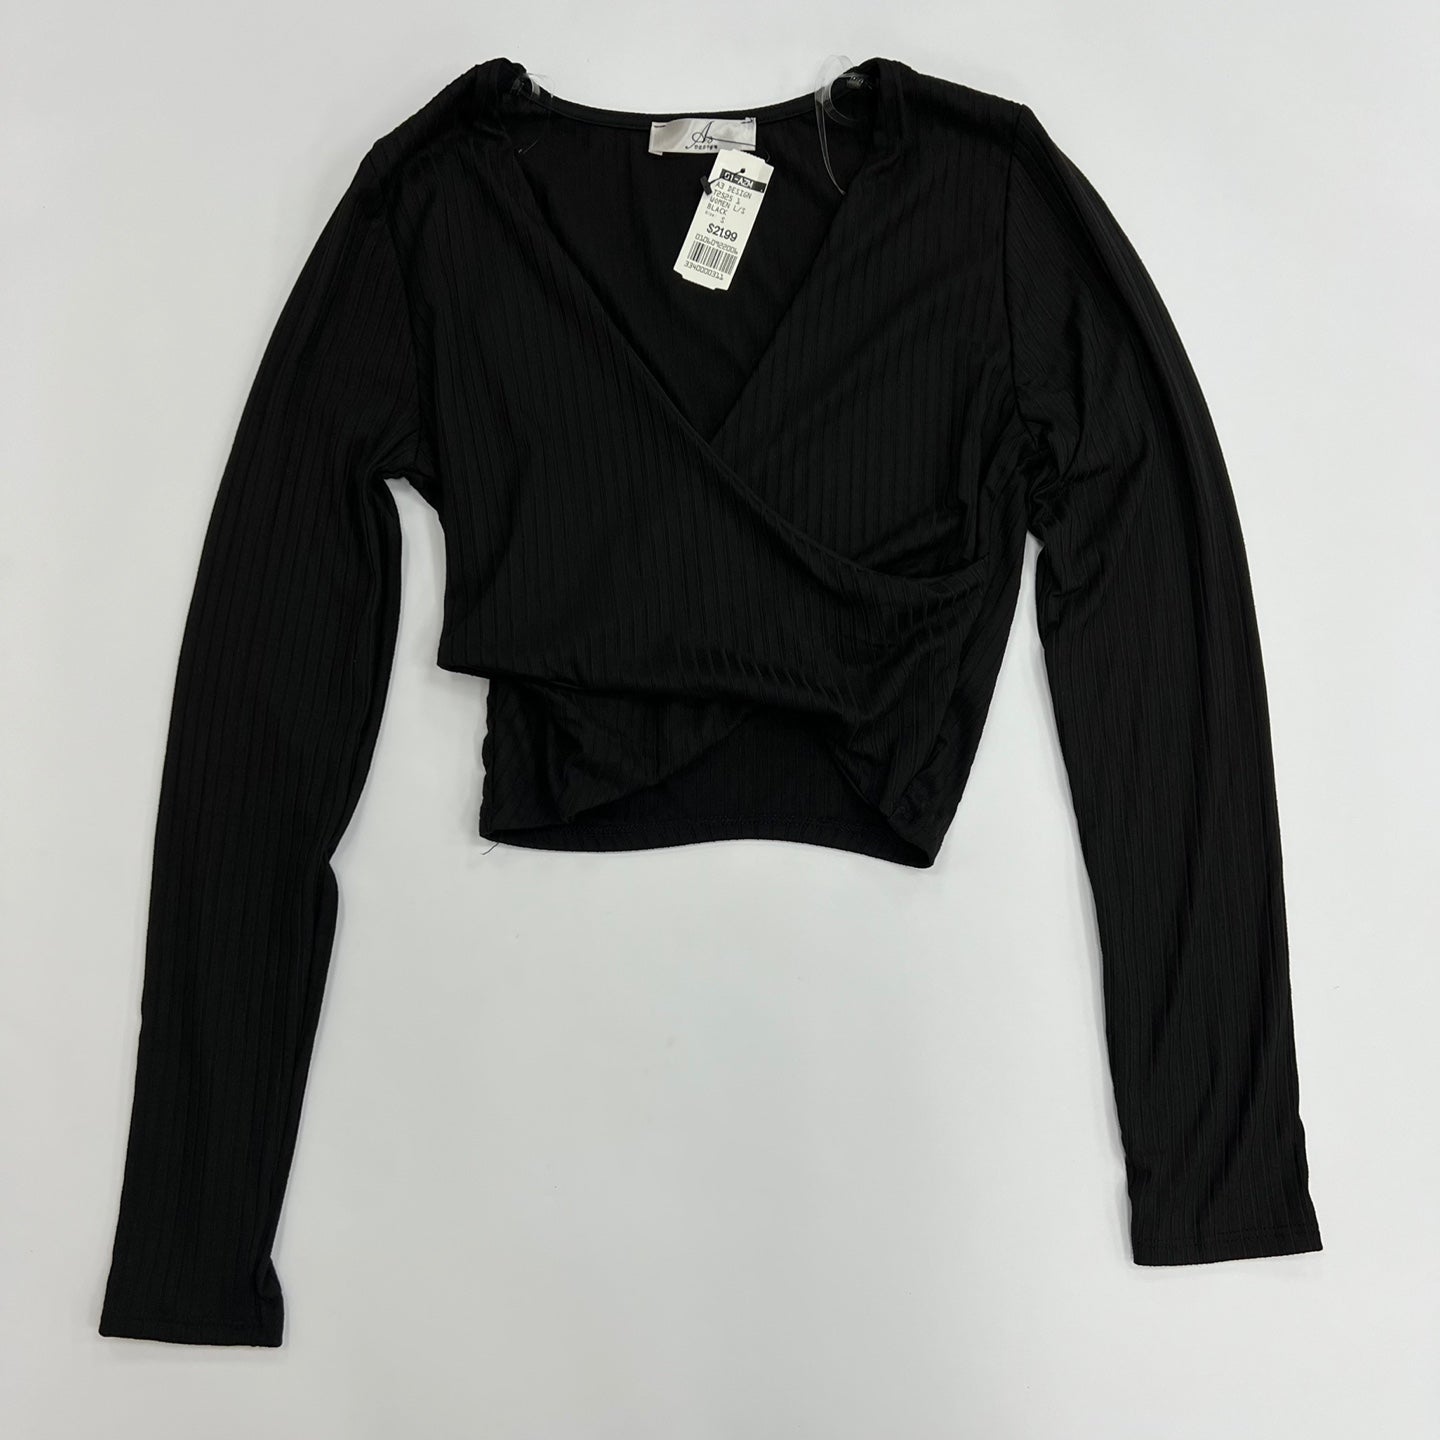 Women's Knit Long Sleeve Sweater Top